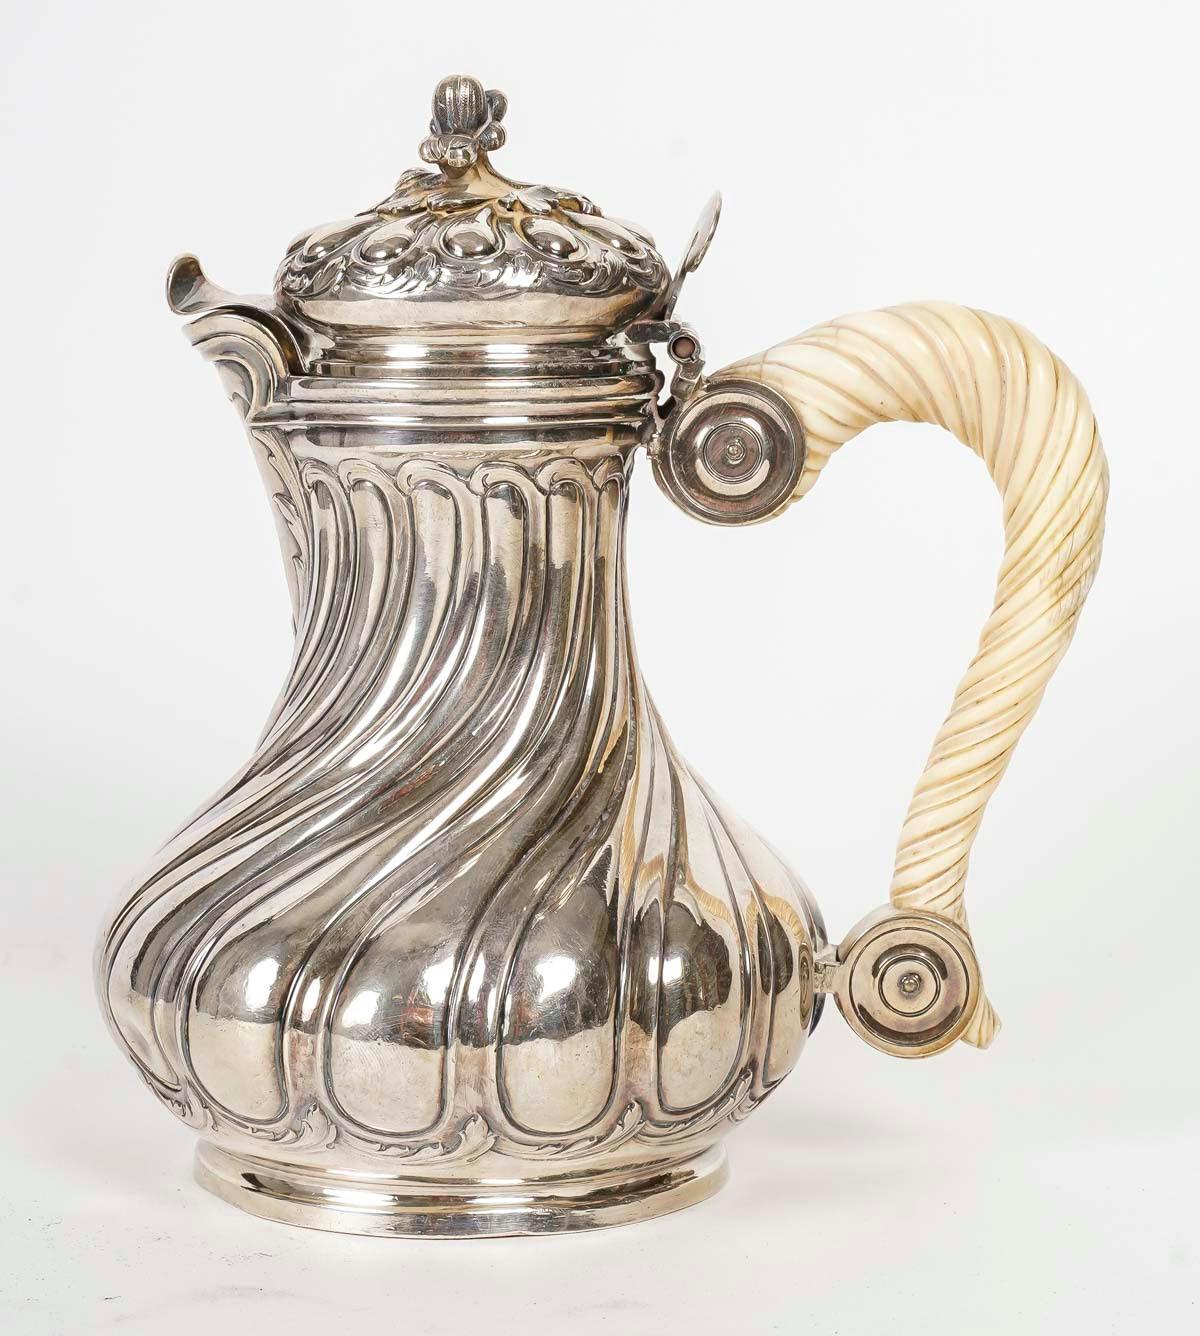 Silver coffee pot by Boucheron Paris in the Louis XV style, 19th Century.

Silver coffee pot in the Louis XV style, 19th century from the Boucheron firm.
h: 18cm, w: 18cm, d: 12cm